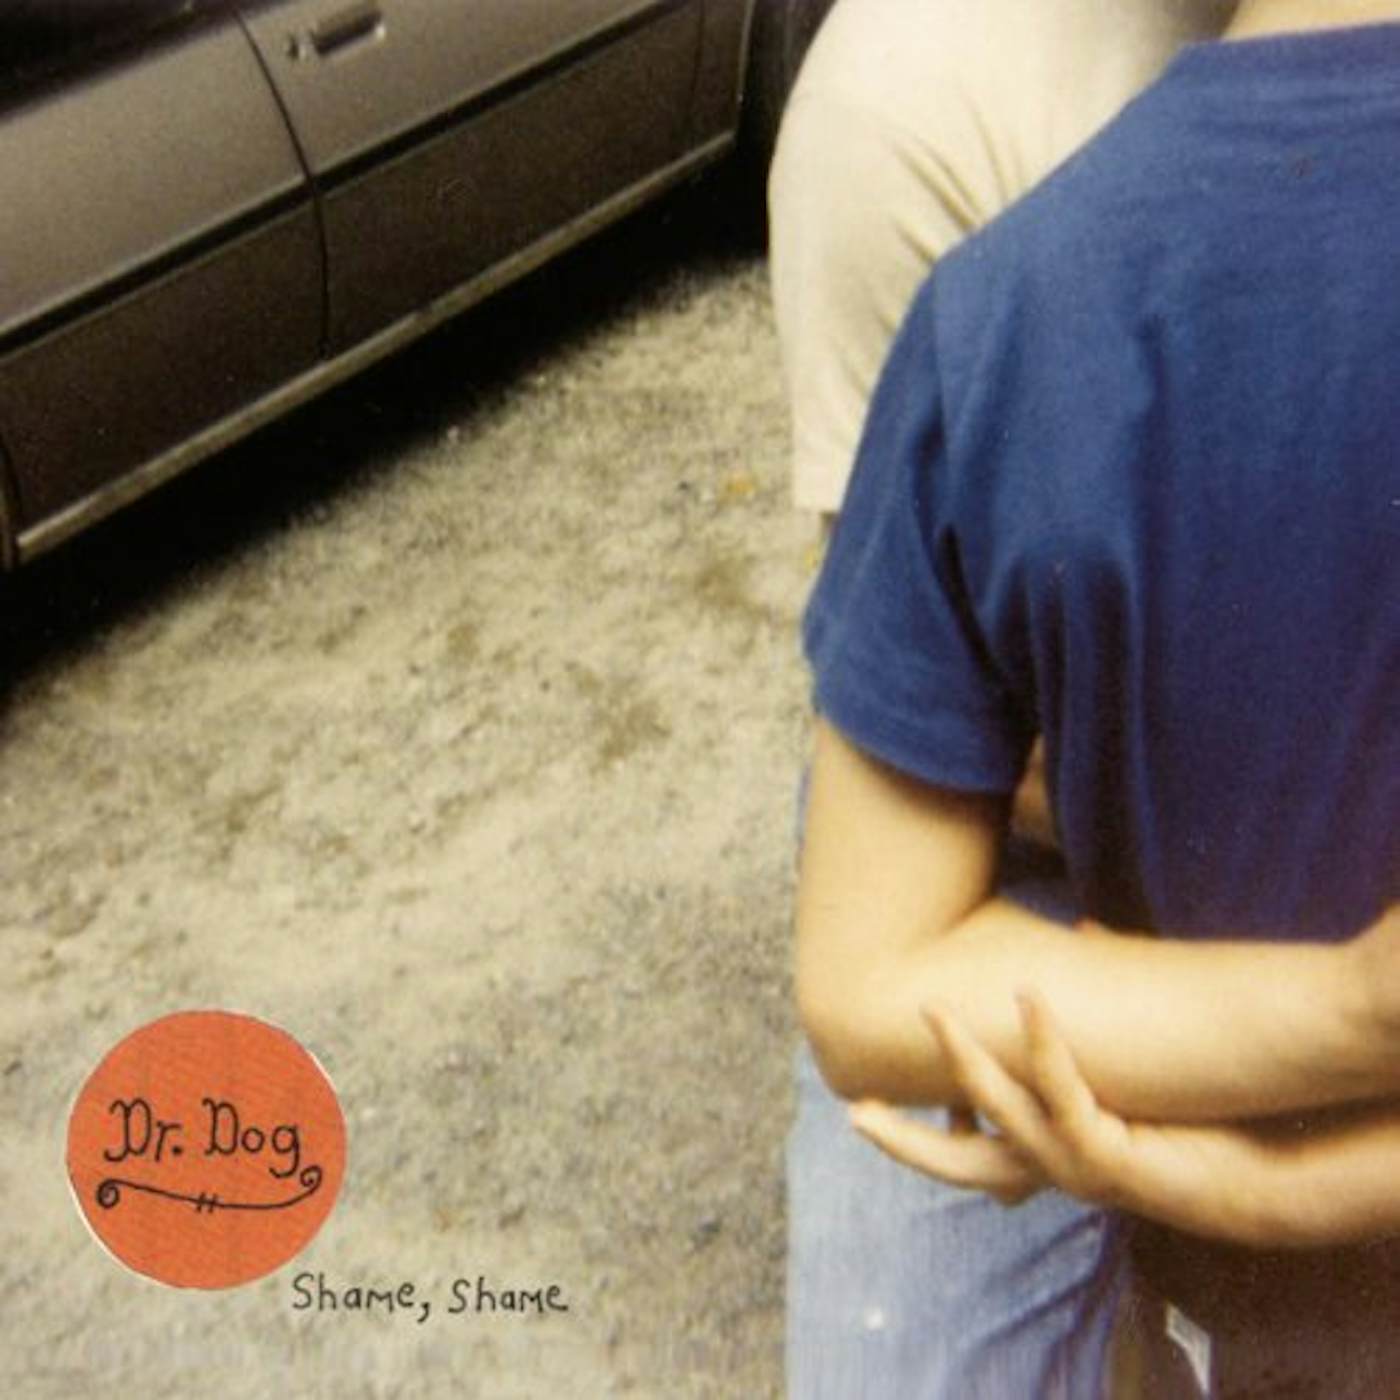 Dr. Dog Shame Shame Vinyl Record